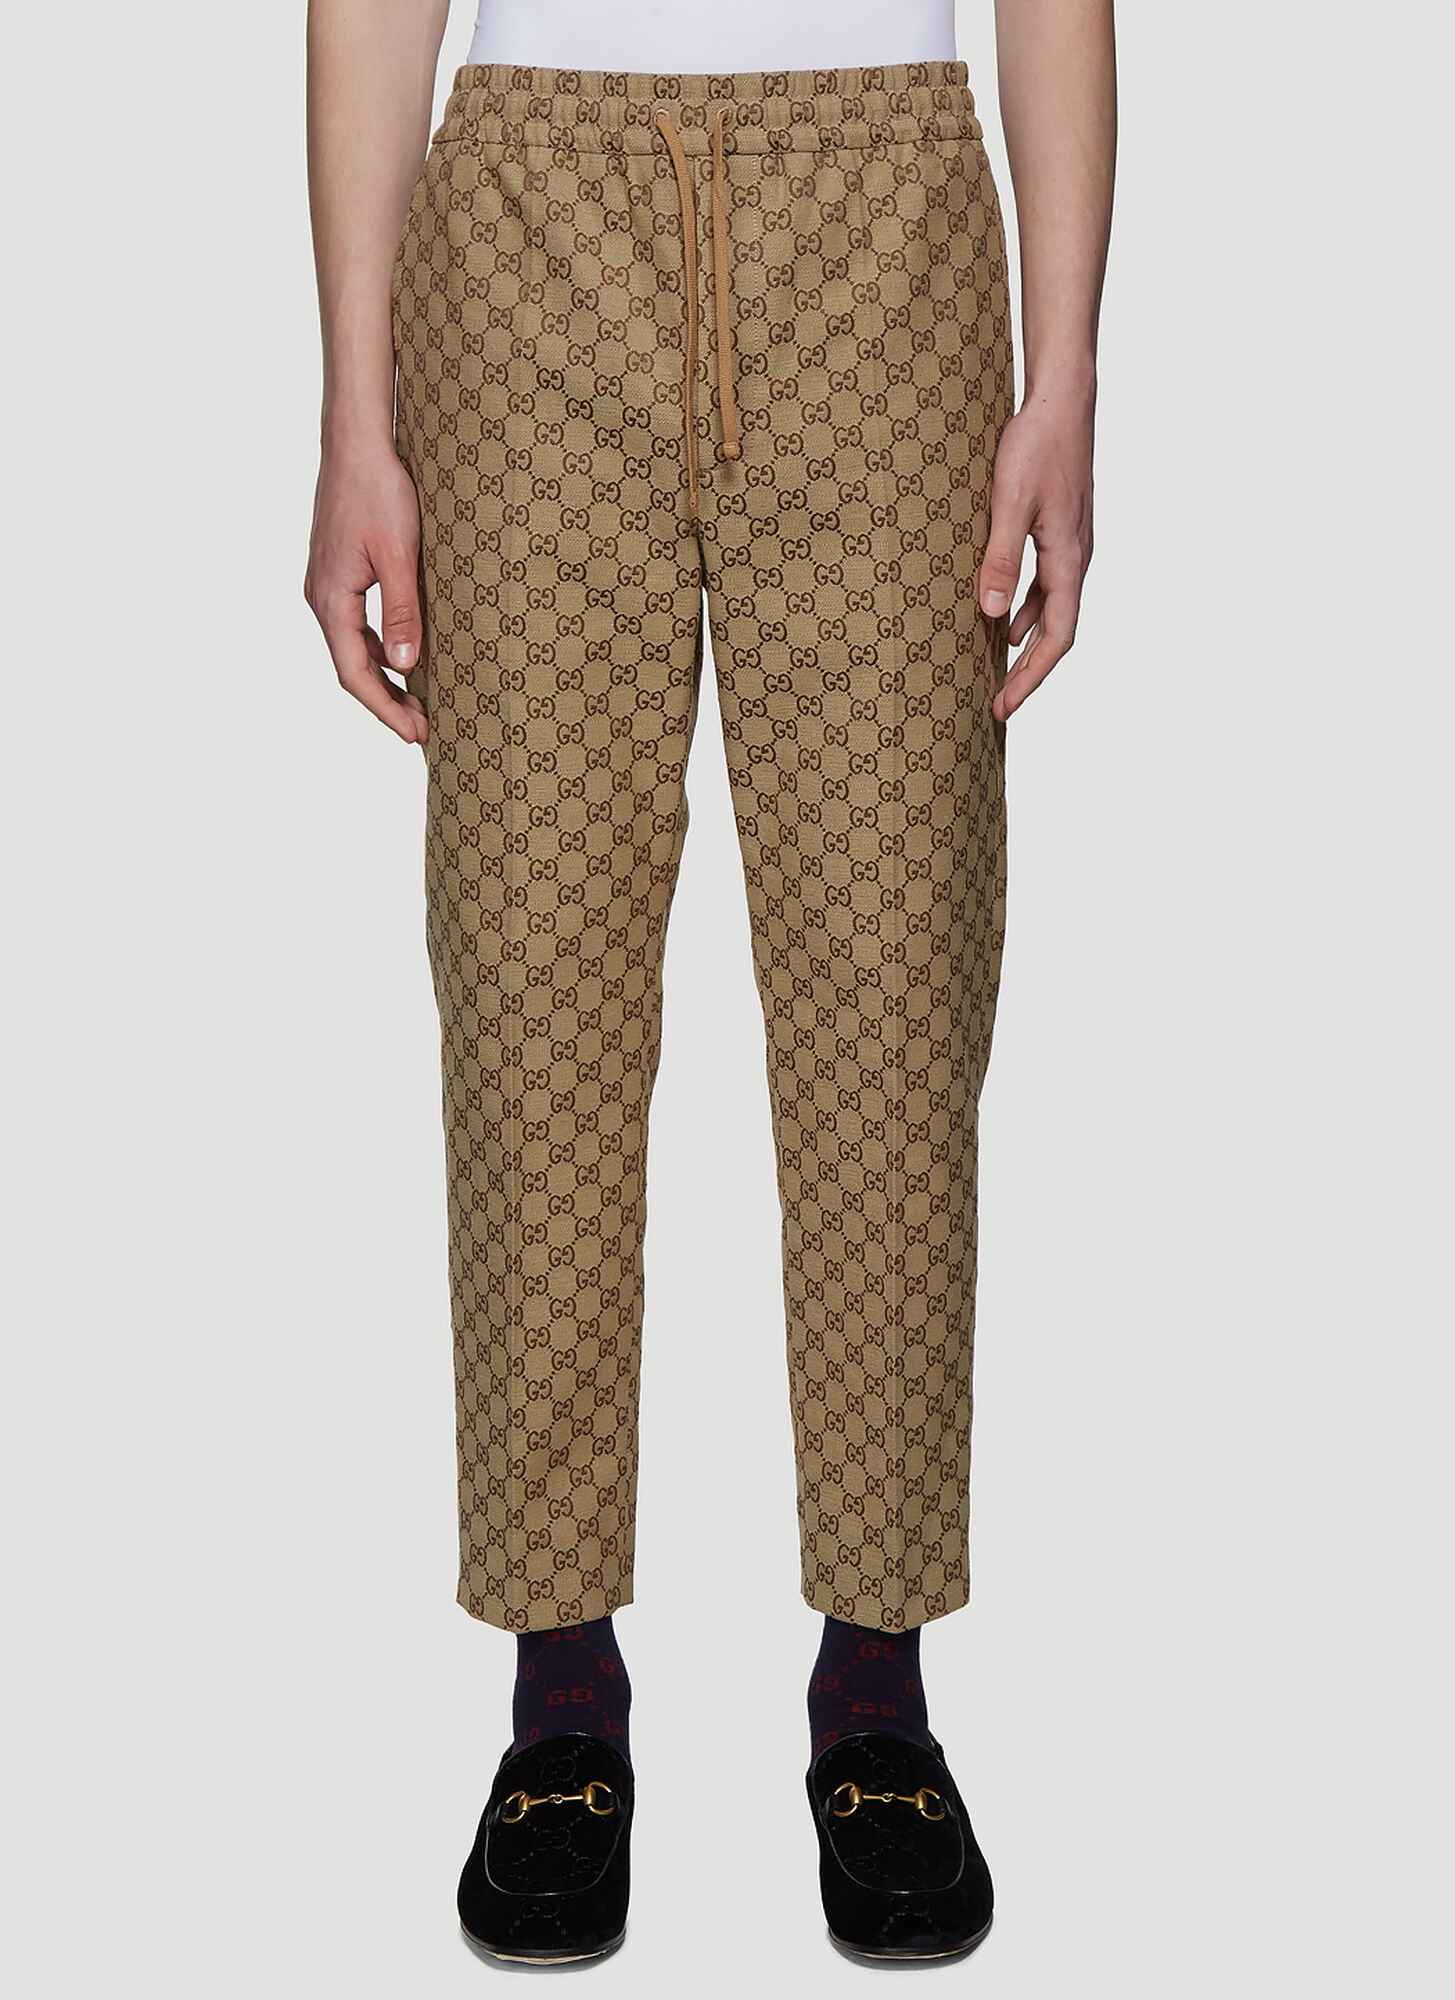 Gucci Luxury Monogram Jacquard Fabrics XYFZ722 for Designer Jackets Suits  Pants Coats Shorts  Jacquard fabric Jacket design Design